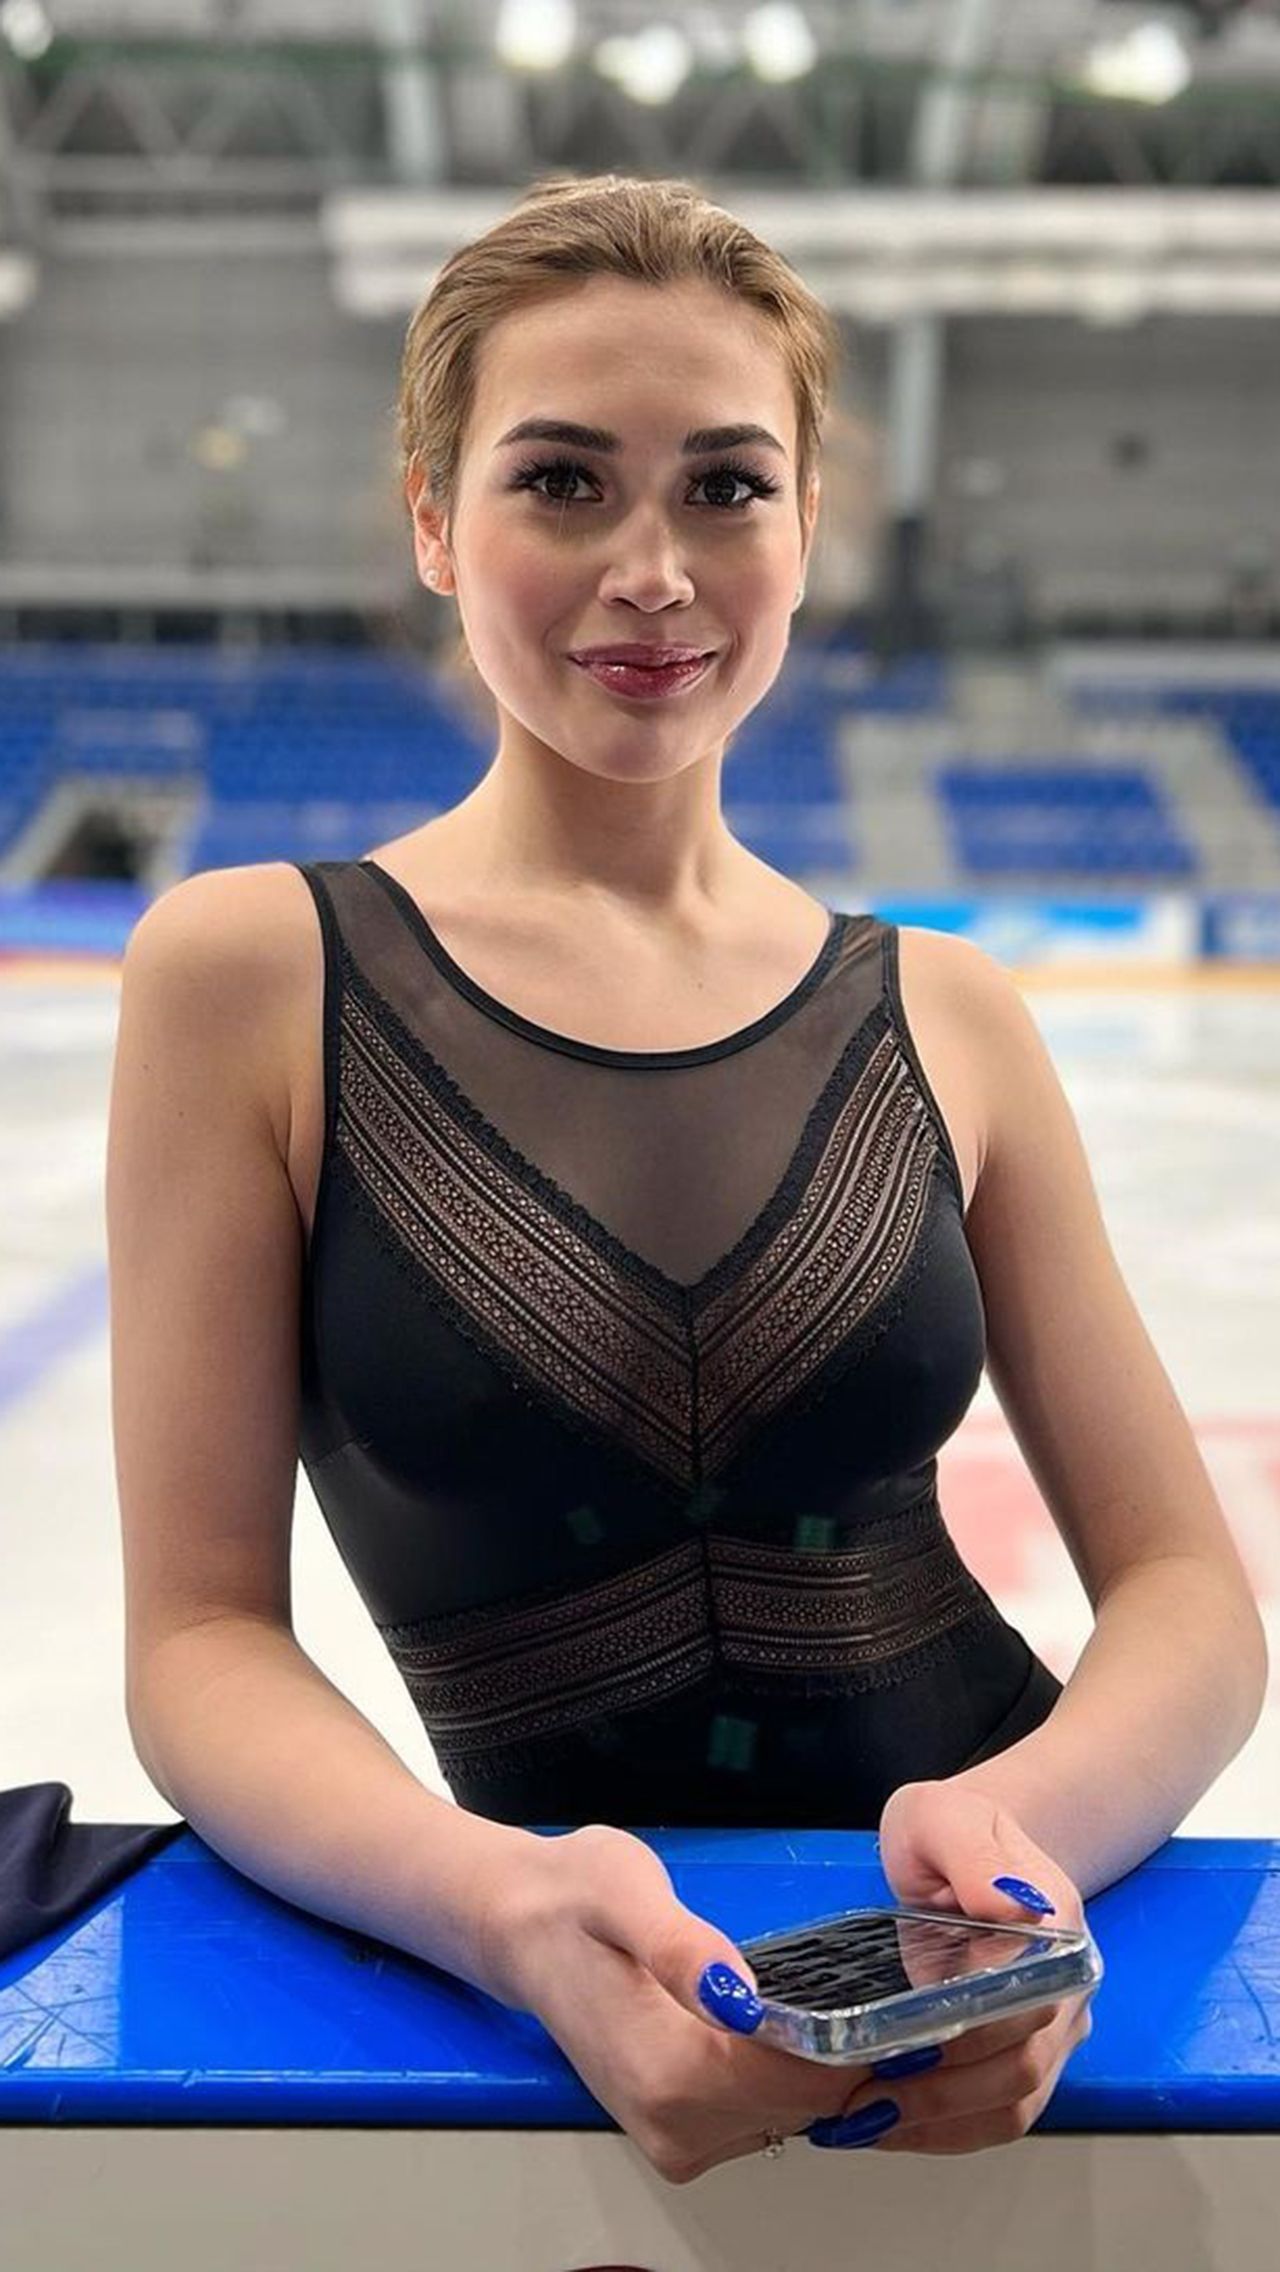 В прошлом сезоне пара Худайбердиева/Базин была первой запасной в танцах на льду и до последнего приходилось быть наготове, чтобы подменить в случае форс-мажора.